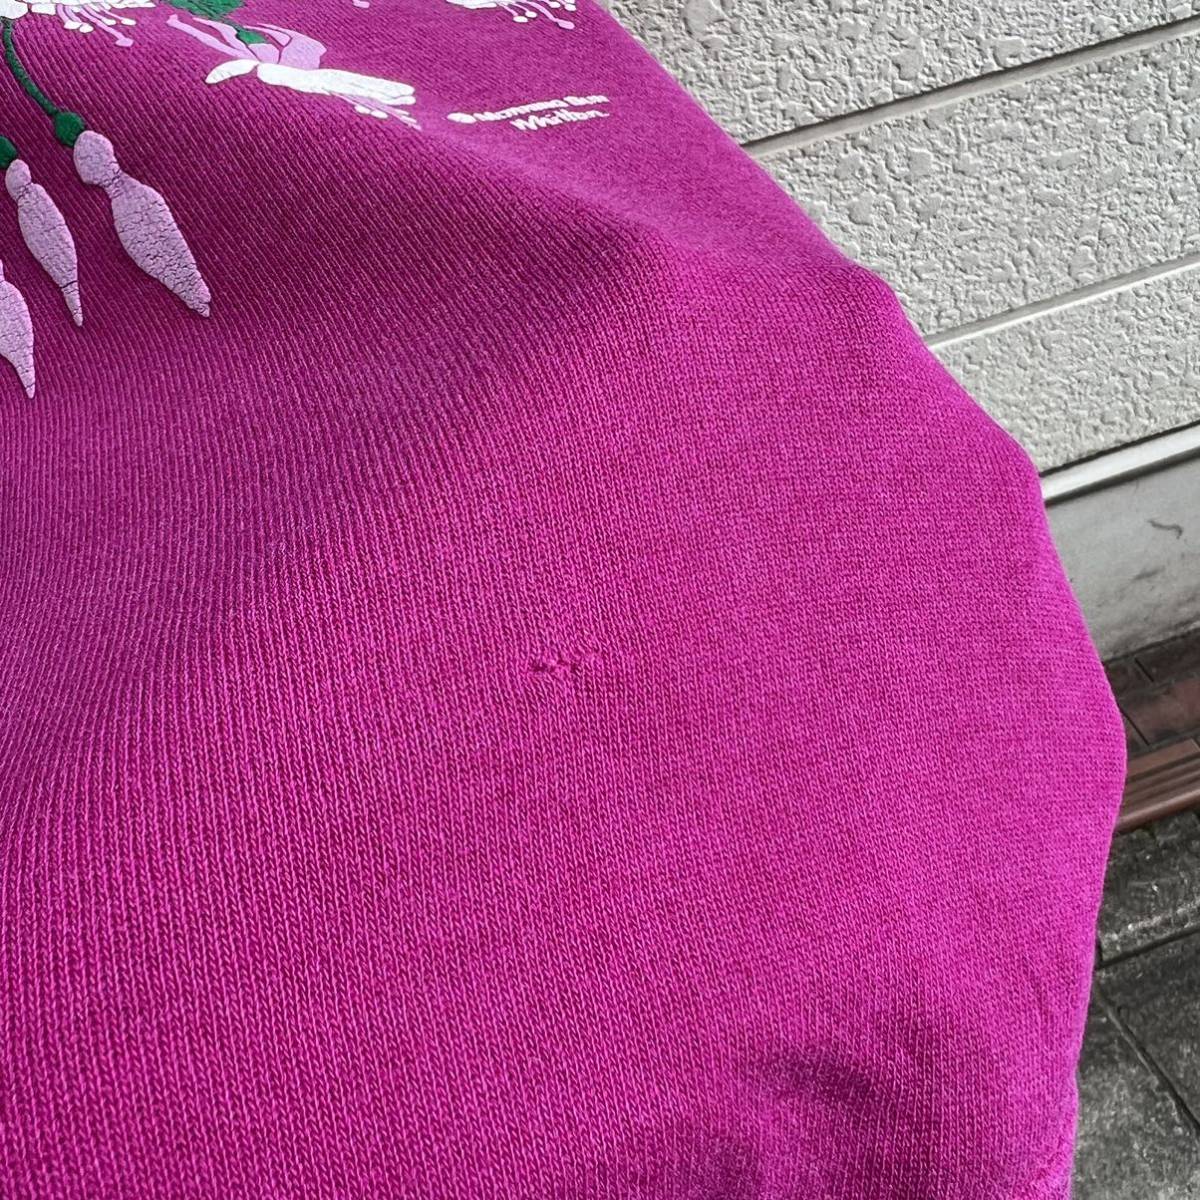 80s 90s USA производства воротник имеется дизайн тренировочный цветок розовый футболка Hanes разделение nzPicket Pand Post America производства б/у одежда vintage Vintage 